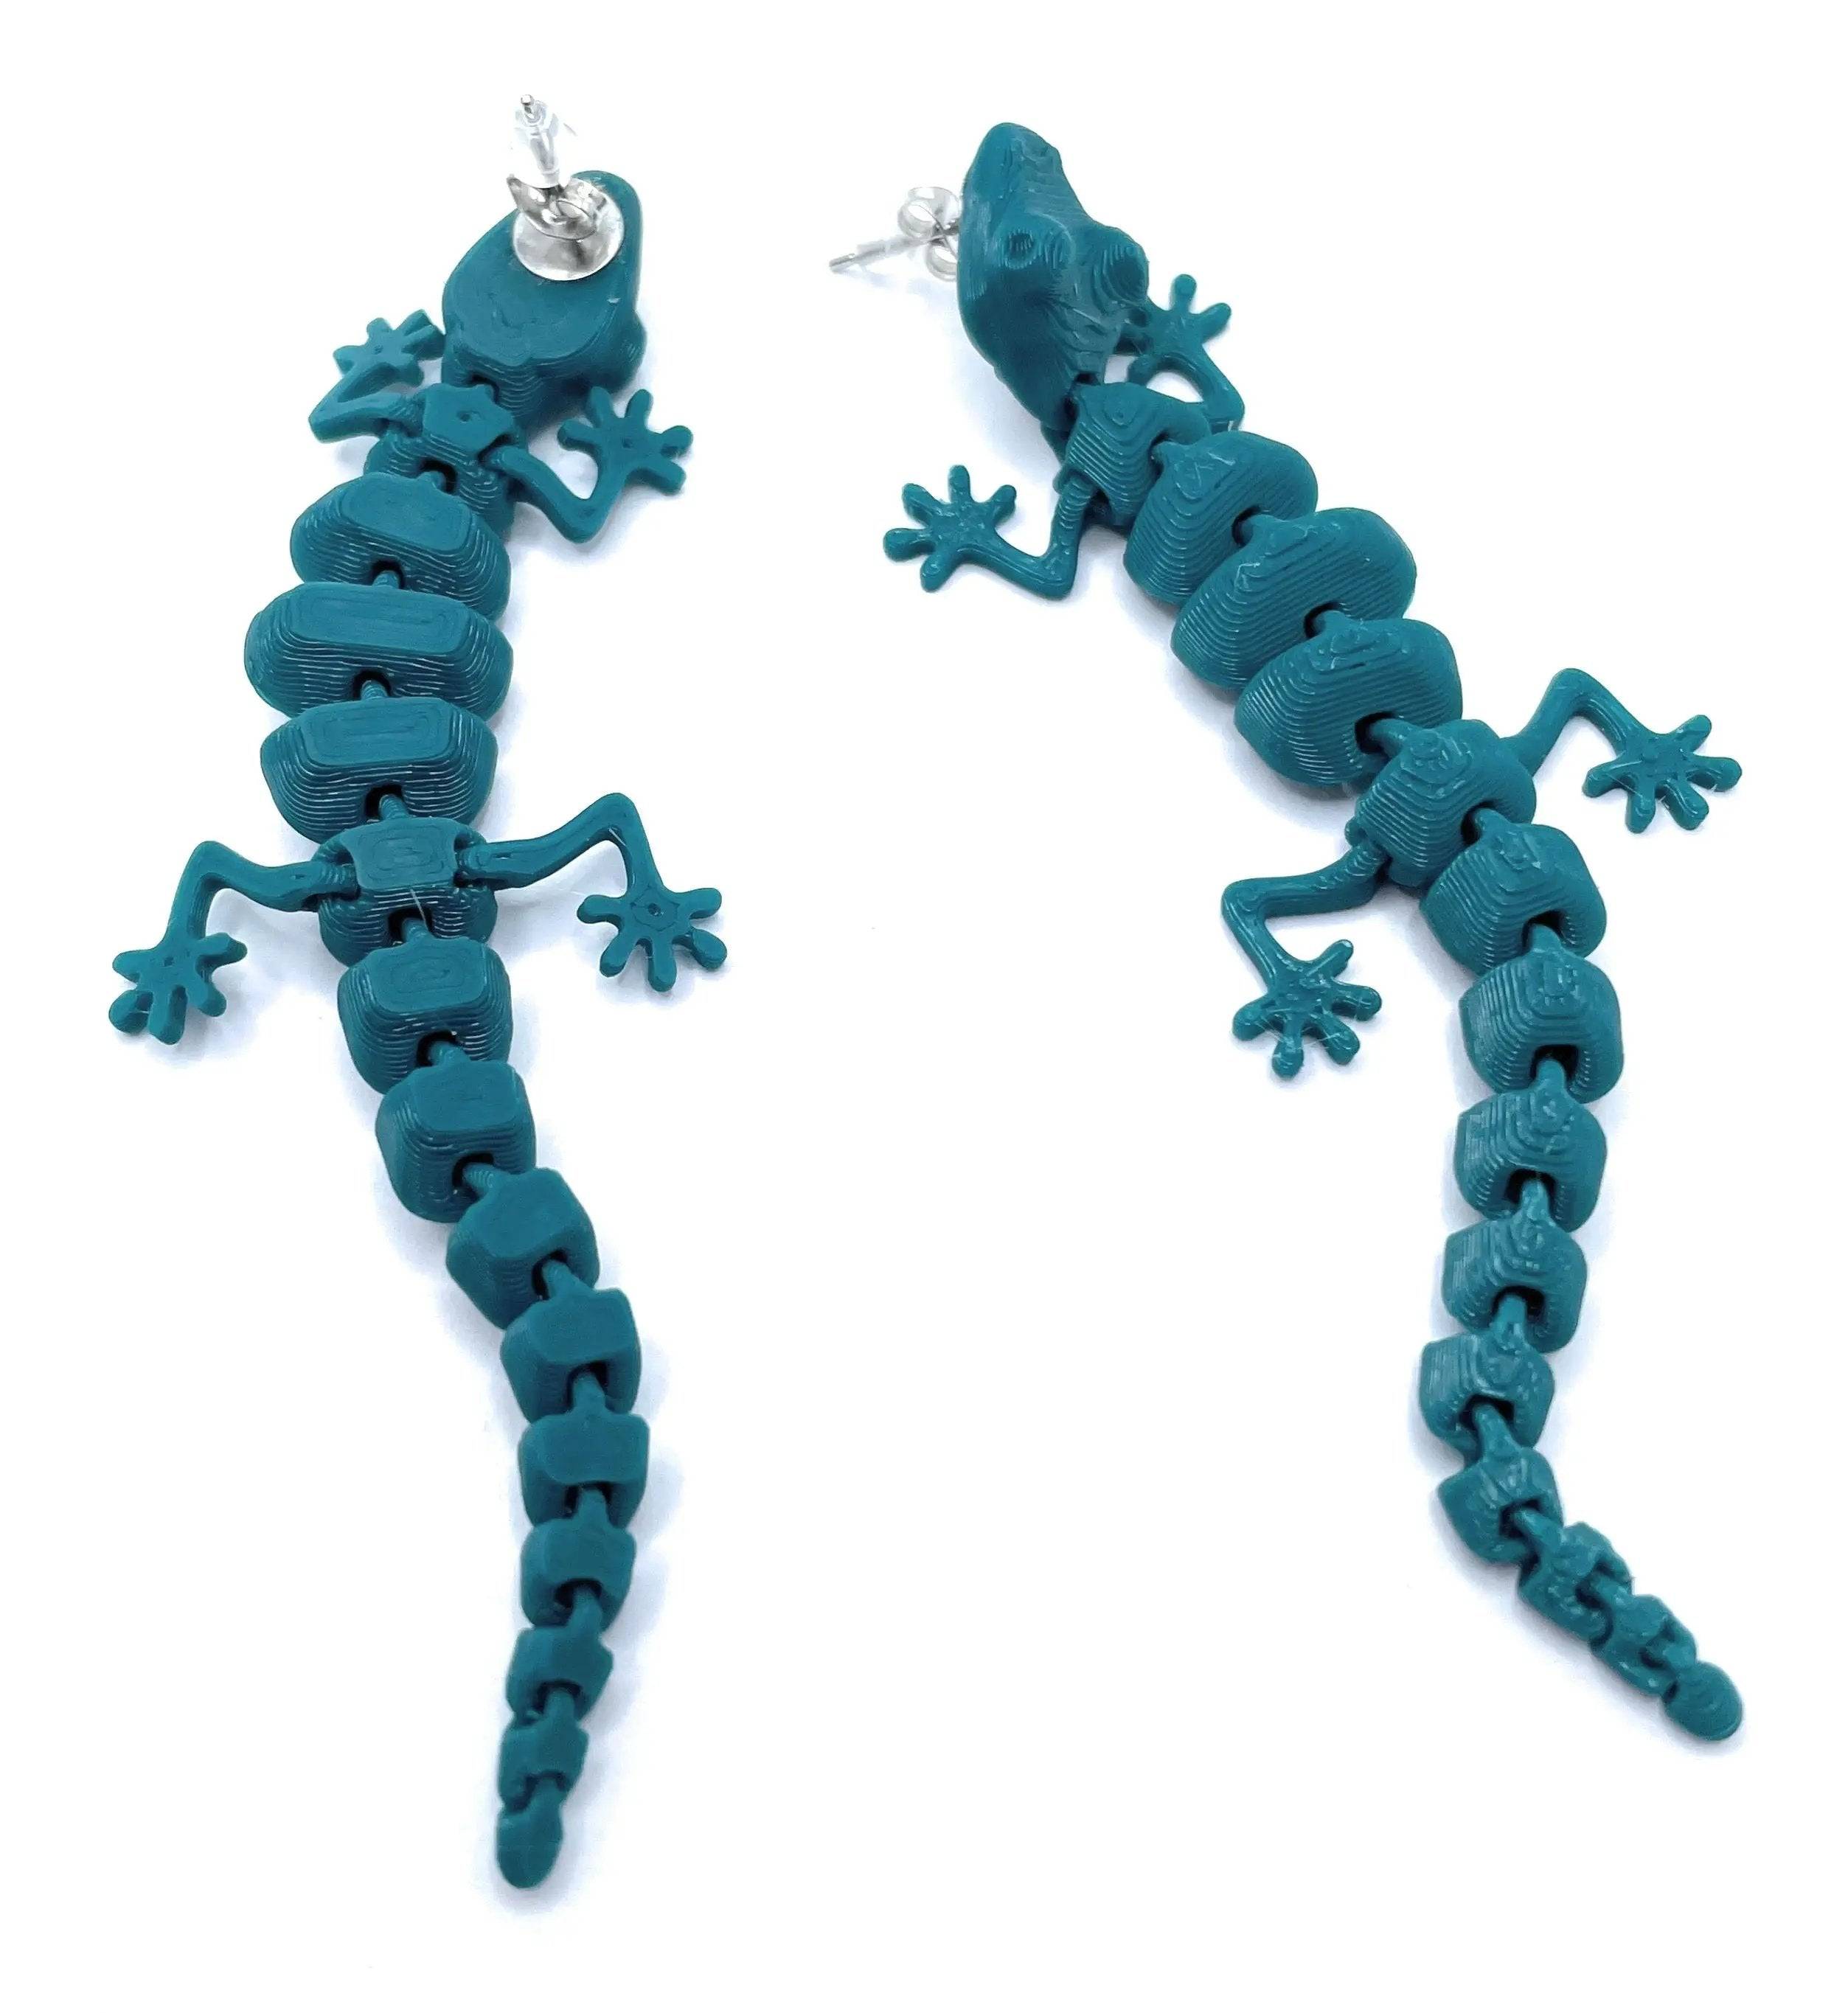 Gecko Dangle Earrings - Stainless Steel - Hypoallergenic